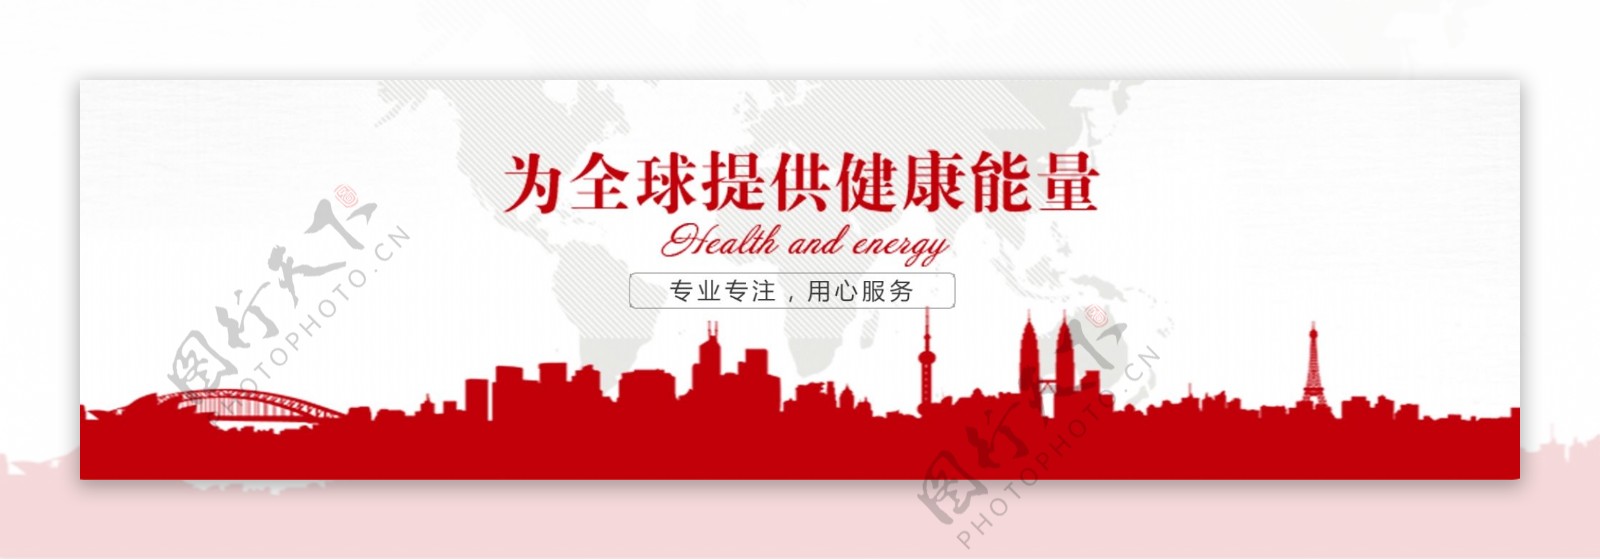 简约企业网站banner图